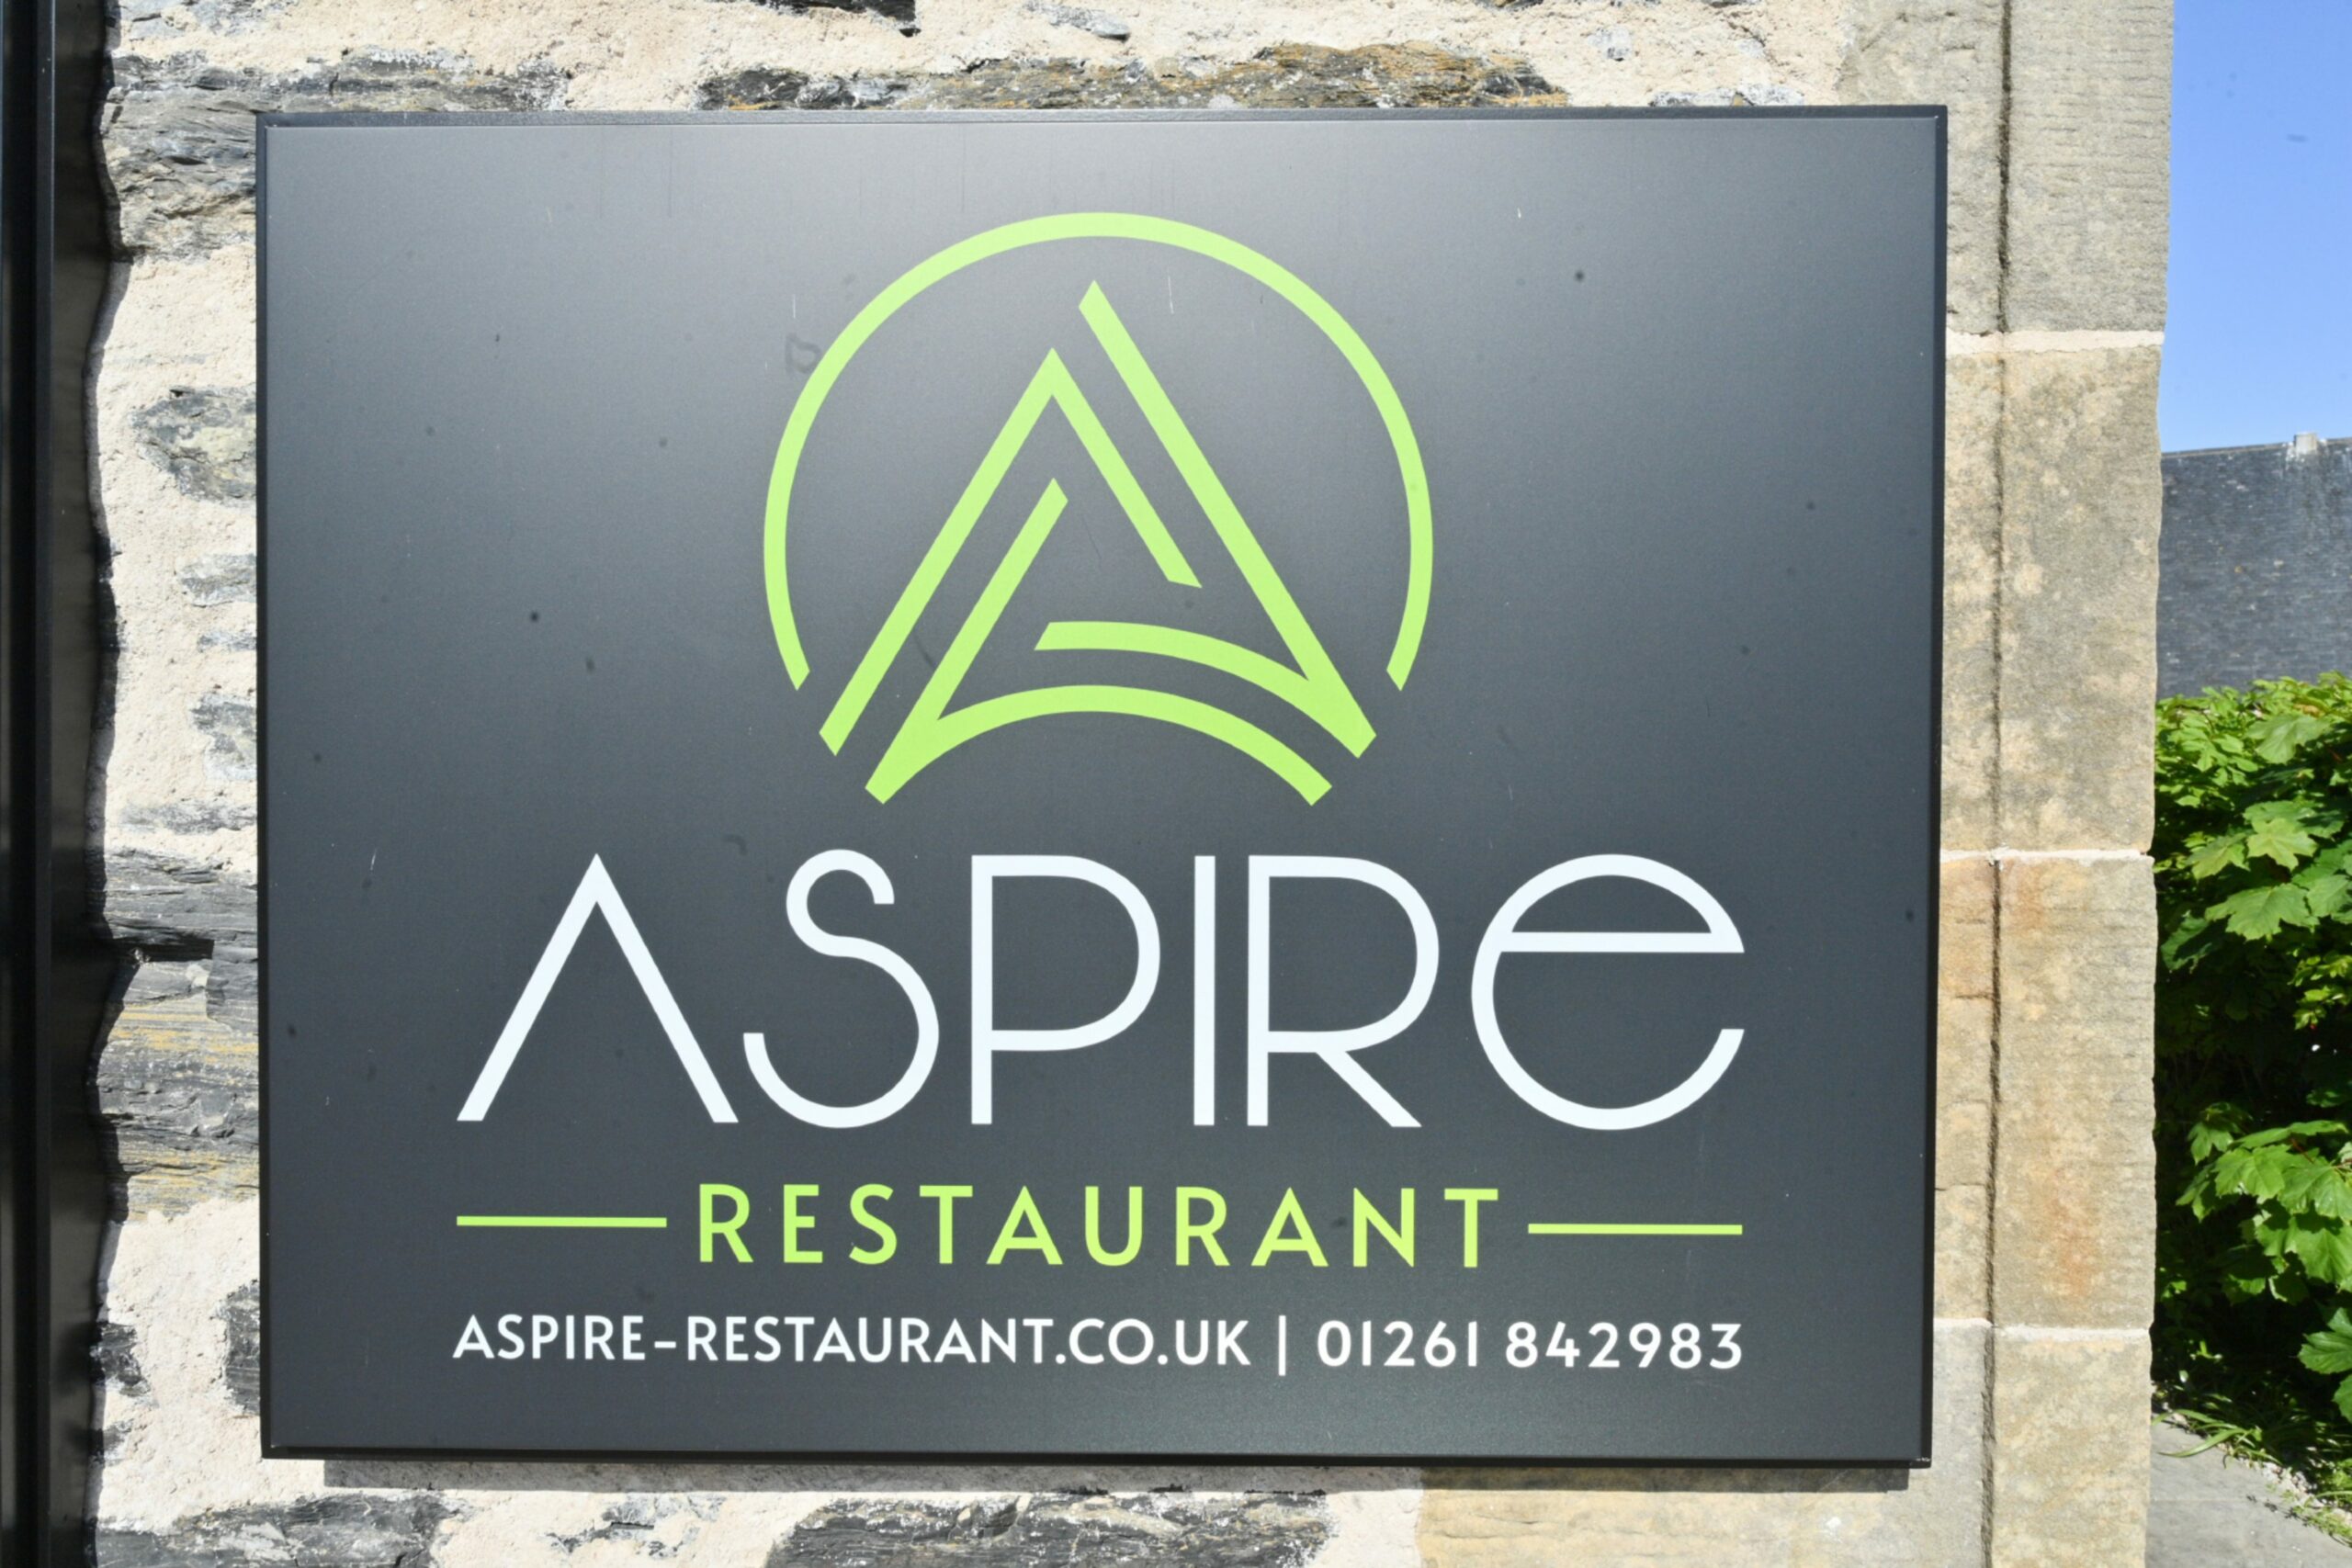 The sign outside reading 'Aspire restaurant - aspire-restaurant.co.uk | 01261 842983